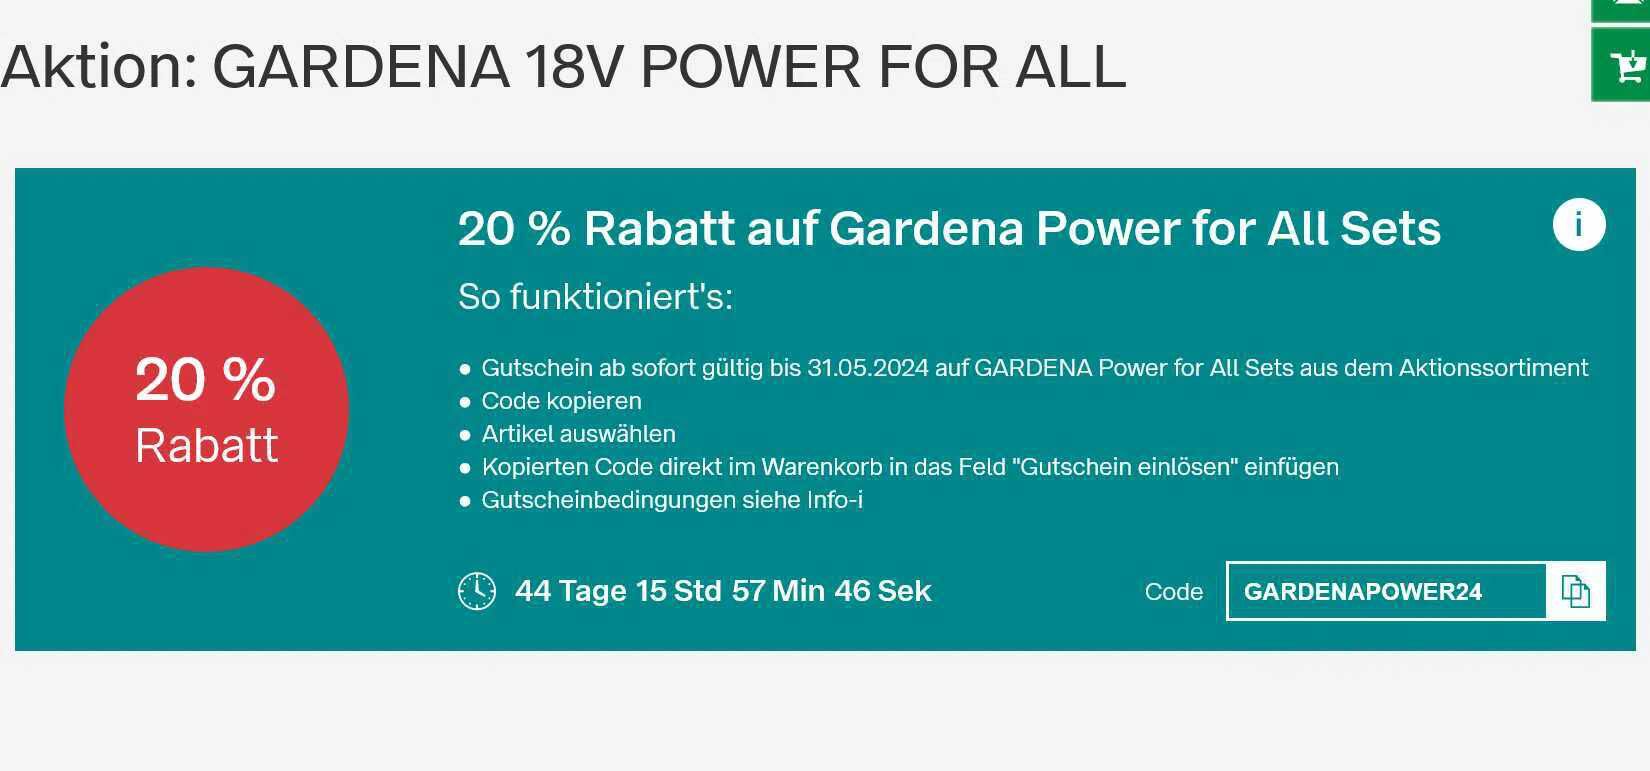 GARDENA 18V POWER FOR ALL (20% Rabatt)